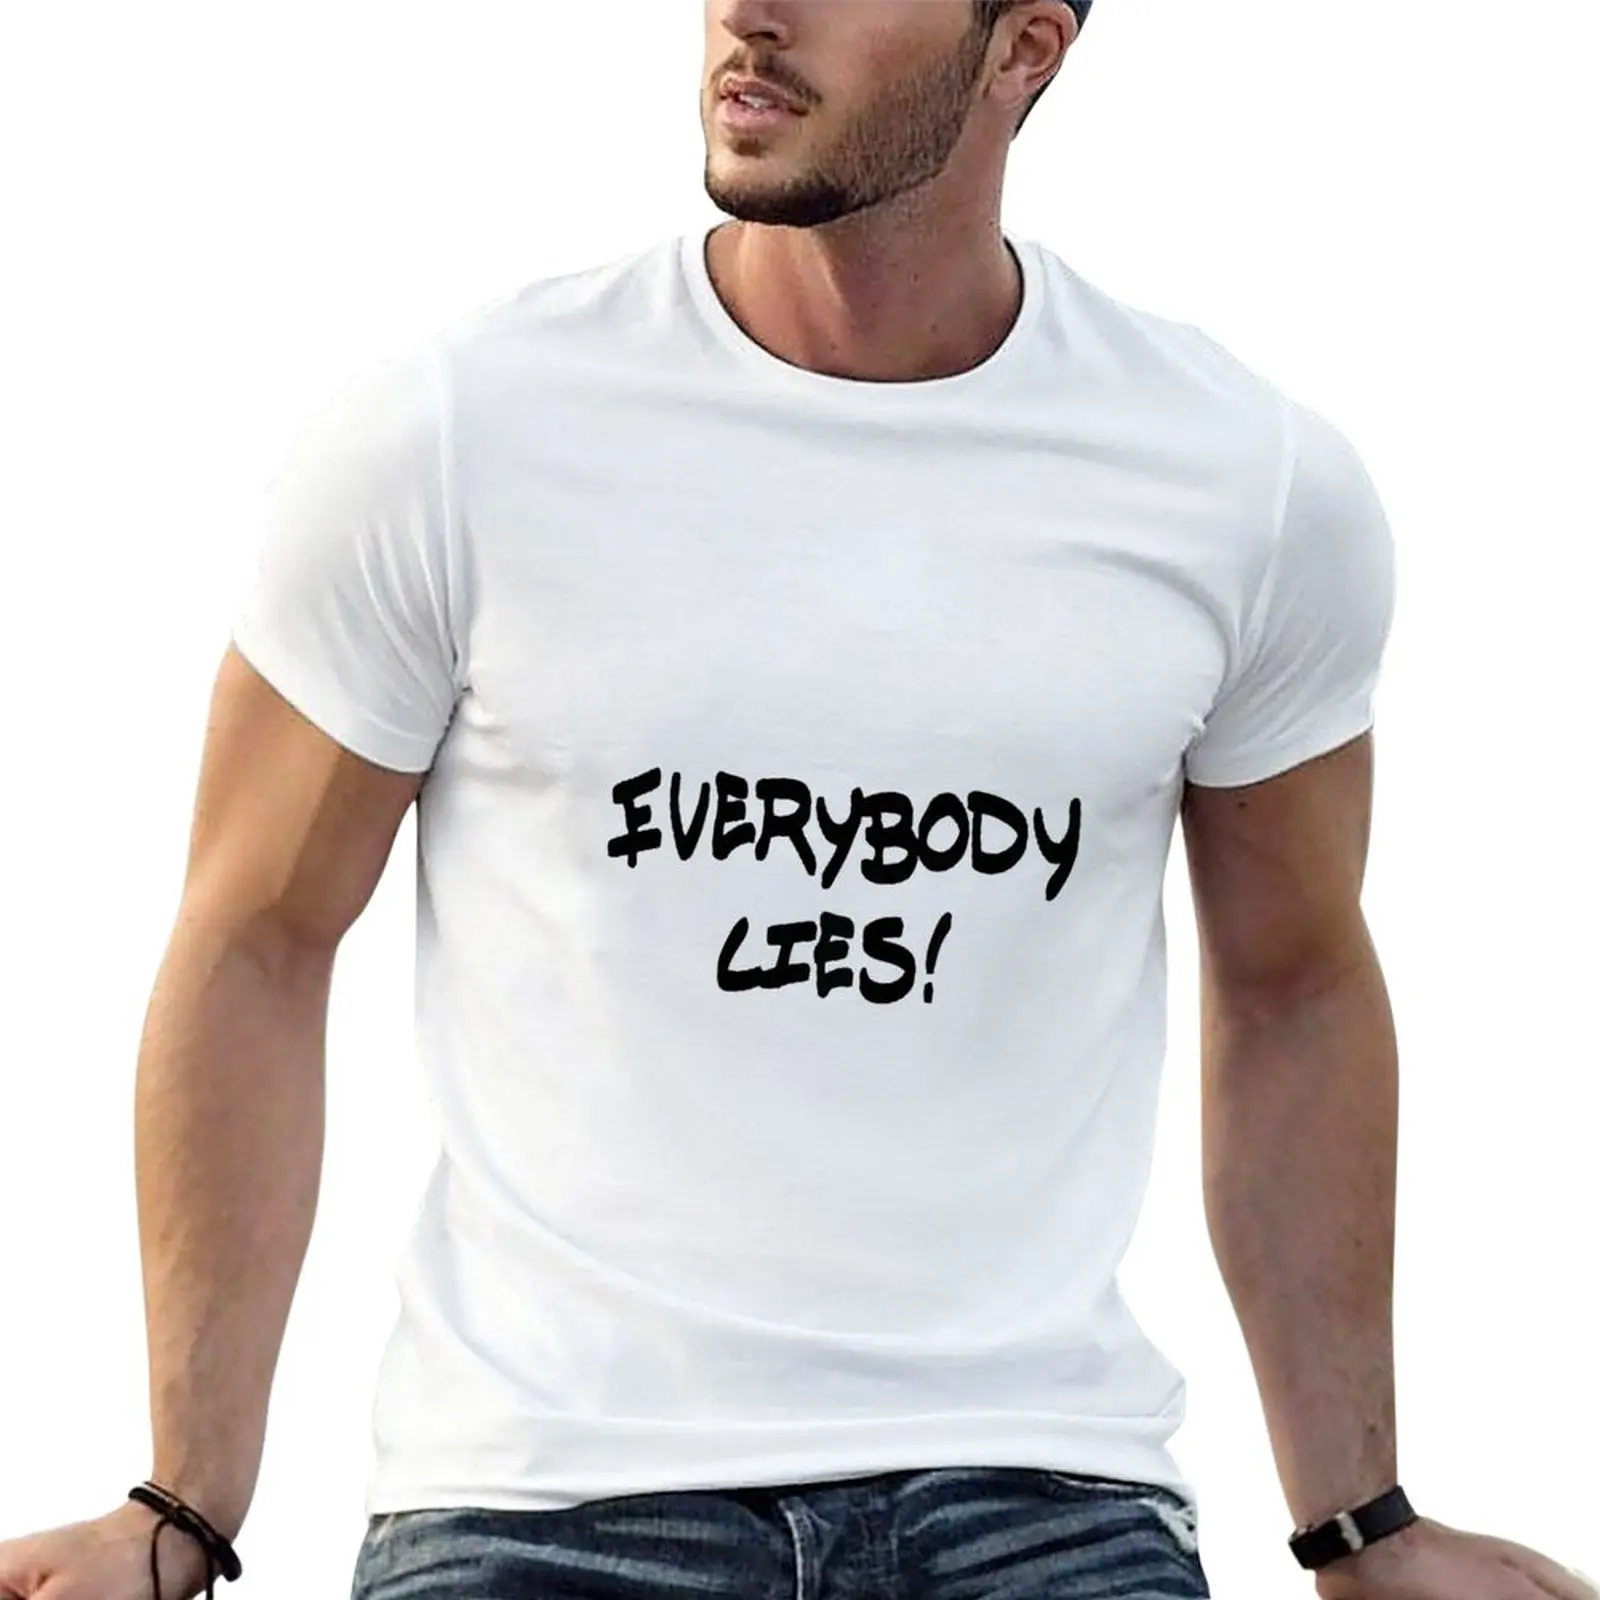 

Жизнь странная: перед штормом-все лжи наклейка футболка Эстетическая одежда свитшоты простые мужские хлопковые футболки